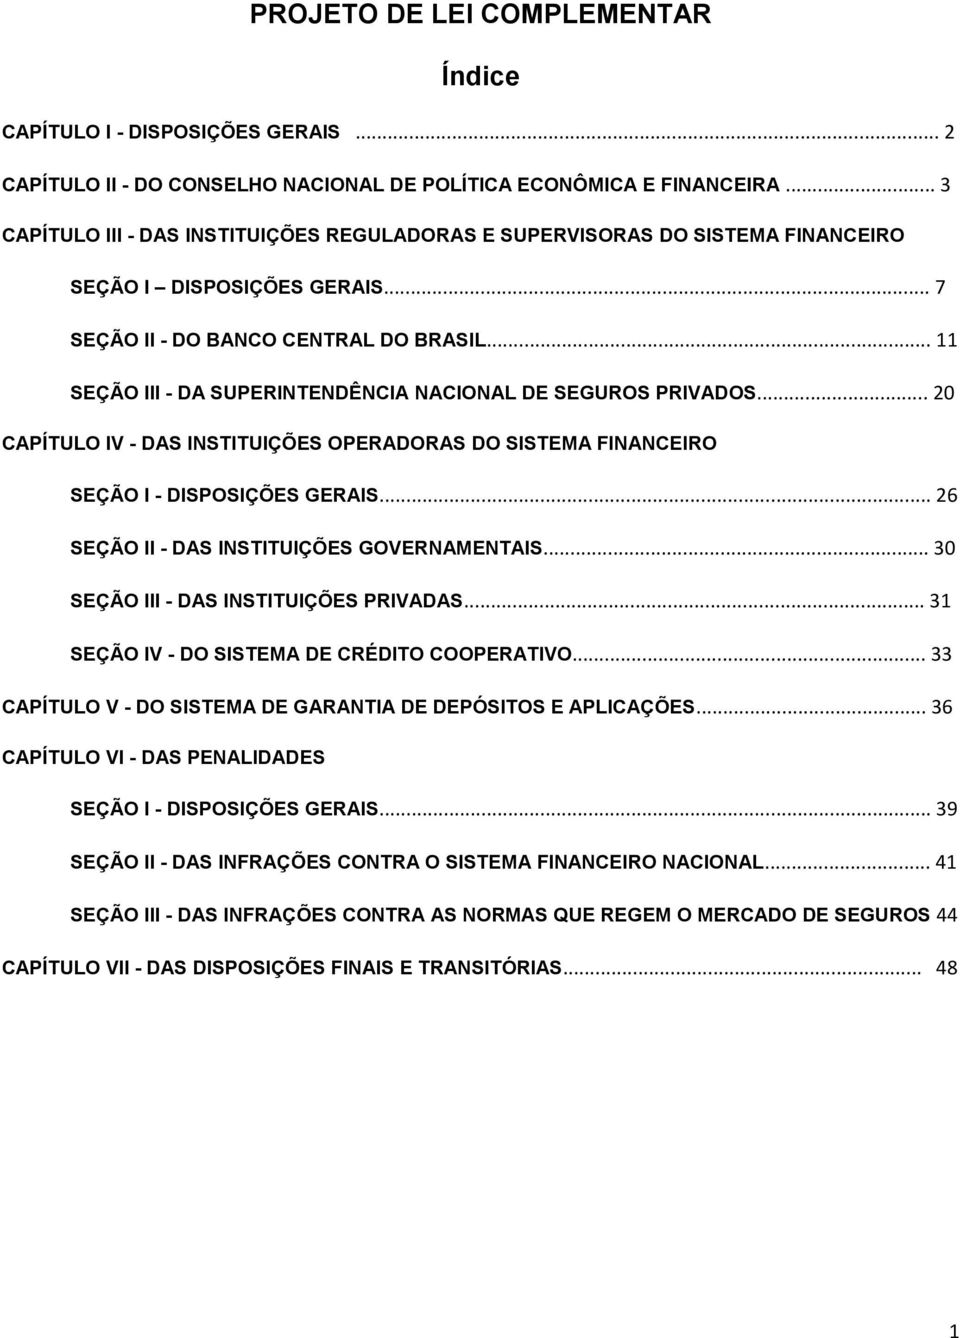 .. 11 SEÇÃO III - DA SUPERINTENDÊNCIA NACIONAL DE SEGUROS PRIVADOS... 20 CAPÍTULO IV - DAS INSTITUIÇÕES OPERADORAS DO SISTEMA FINANCEIRO SEÇÃO I - DISPOSIÇÕES GERAIS.